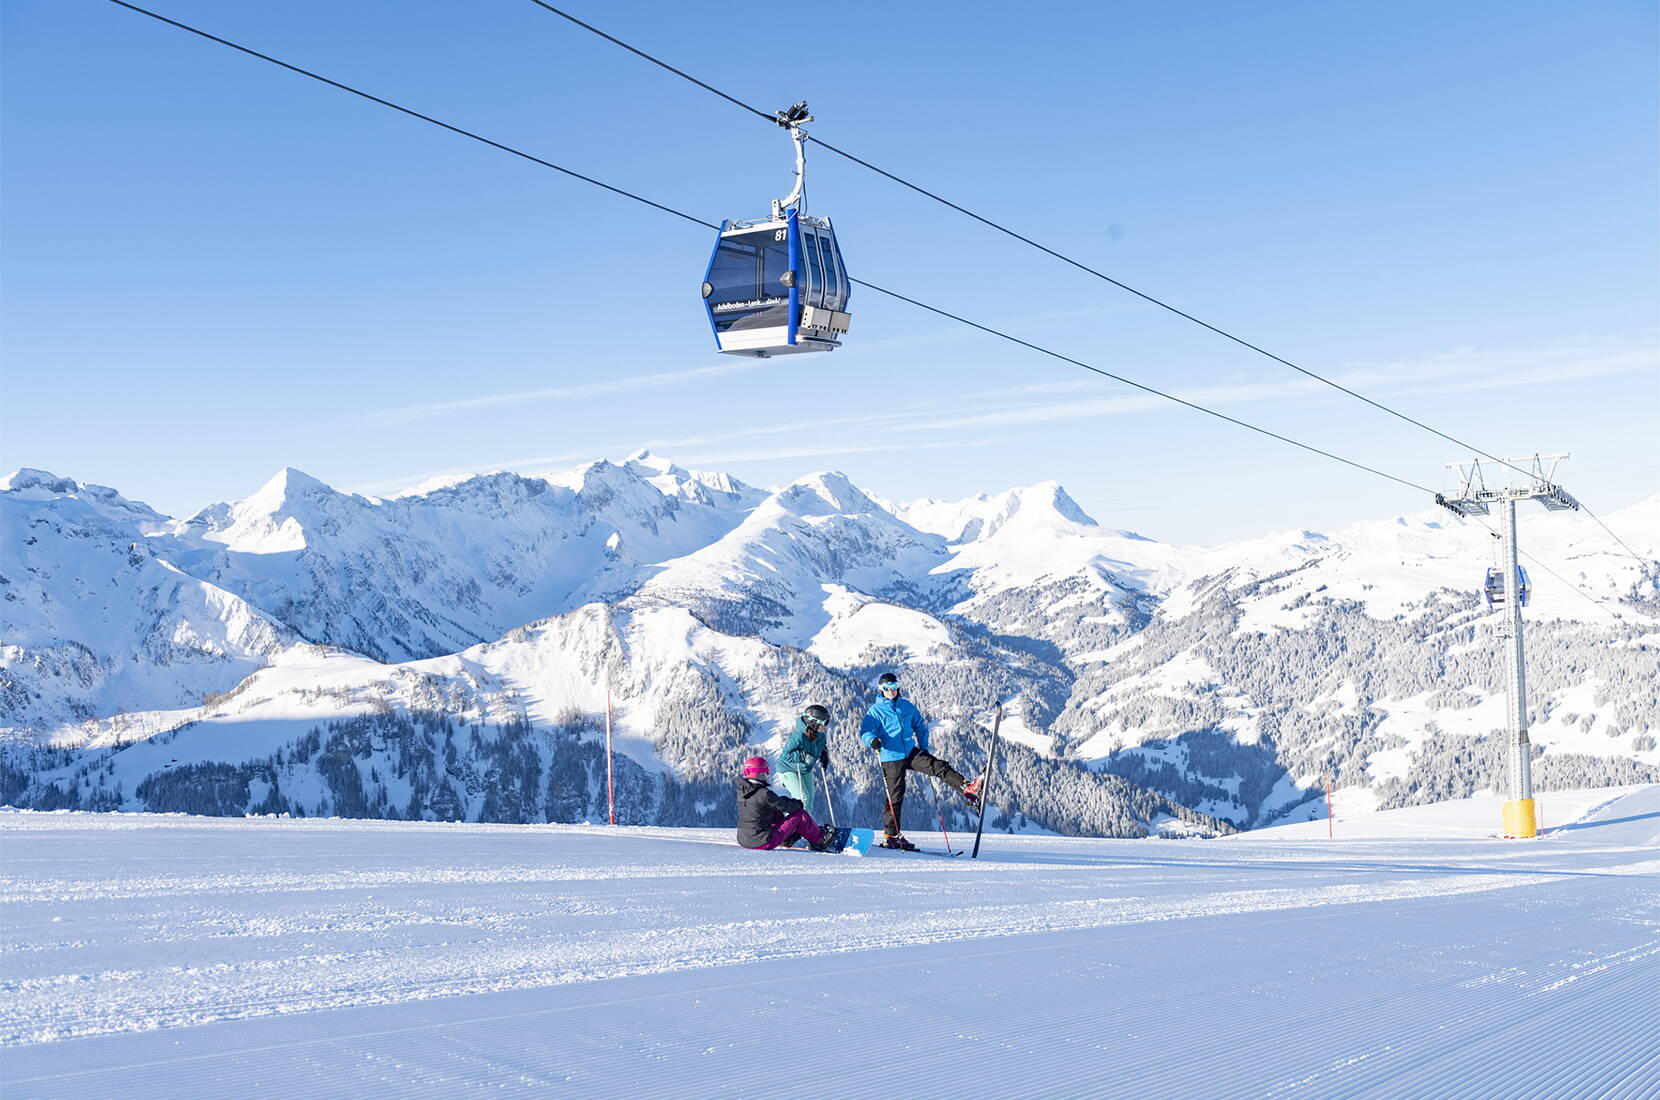 Excursion en famille à Adelboden-Lenk. La région de ski Adelboden-Lenk est l'un des domaines skiables et de snowboard les plus attrayants de Suisse. Les nombreuses auberges de montagne parfaitement entretenues, les chalets de ski traditionnels ou les bars de neige branchés garantissent beaucoup de charme et d'hospitalité.